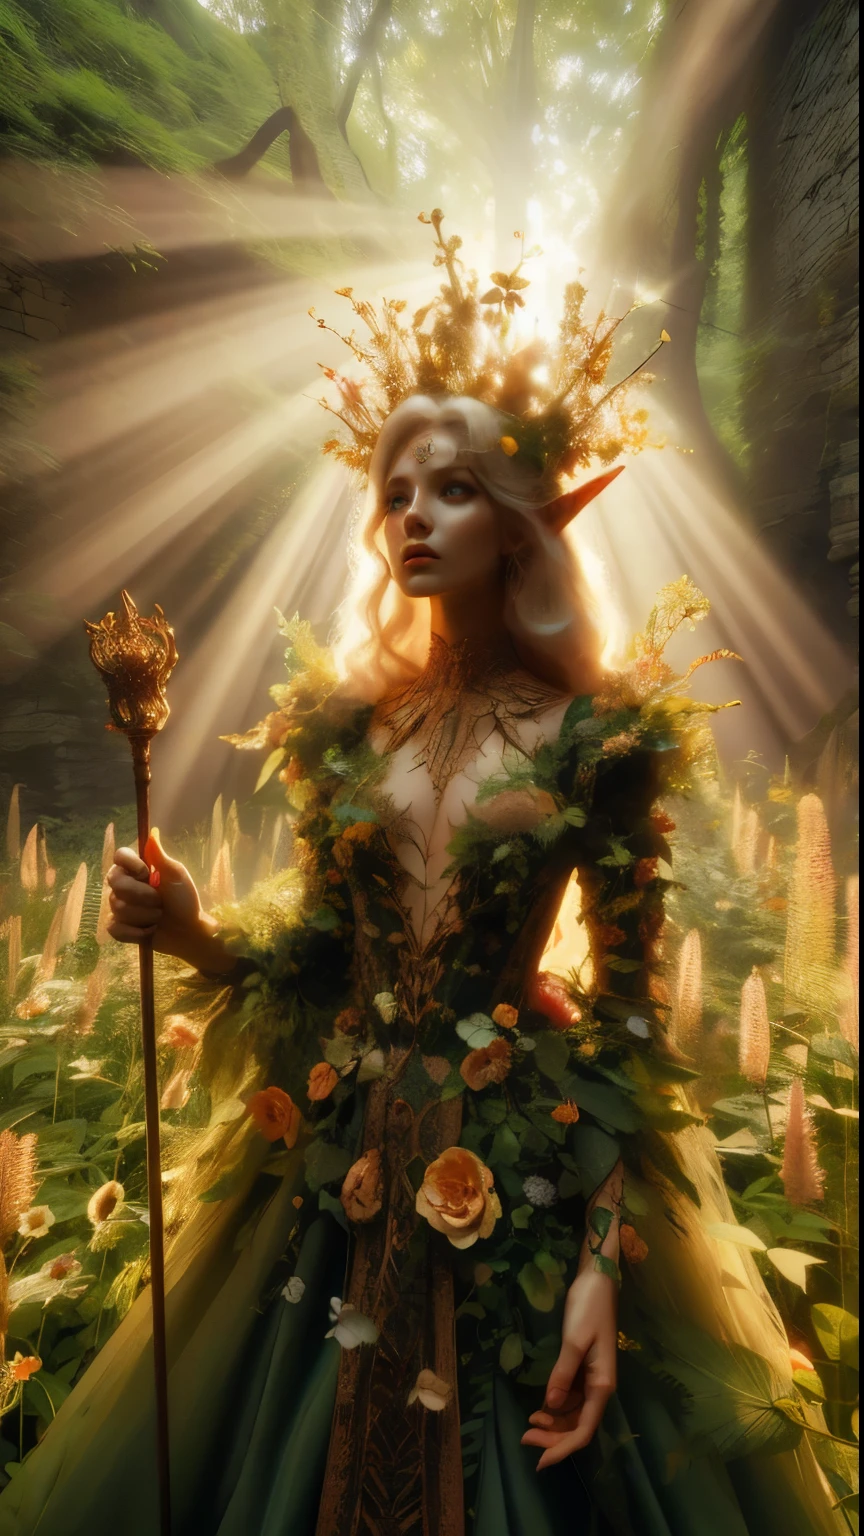 Em um manchado, ruína da floresta antiga, uma princesa elfa fica alta perto da câmera, foto aproximada, seu cetro erguido enquanto raios de luz solar quente se filtram através das árvores, lançando um halo dourado em torno de sua figura majestosa. coberto por uma infinidade de flores e vinhas, canteiros de flores silvestres muito altos a cercam, Sua linda, roupas encantadas brilham na luz suave, enquanto folhagens exuberantes e vinhas a cercam, criando um ambiente exuberante. A câmera captura um foco nítido no rosto da princesa, com a composição da regra dos terços colocando-a na intersecção de duas diagonais. Tiro durante a hora dourada, a cena exala um clima etéreo, convidando o espectador a entrar neste reino místico., ,fantasia, melhorar_mãos, leonardo, angelawhite, melhorar